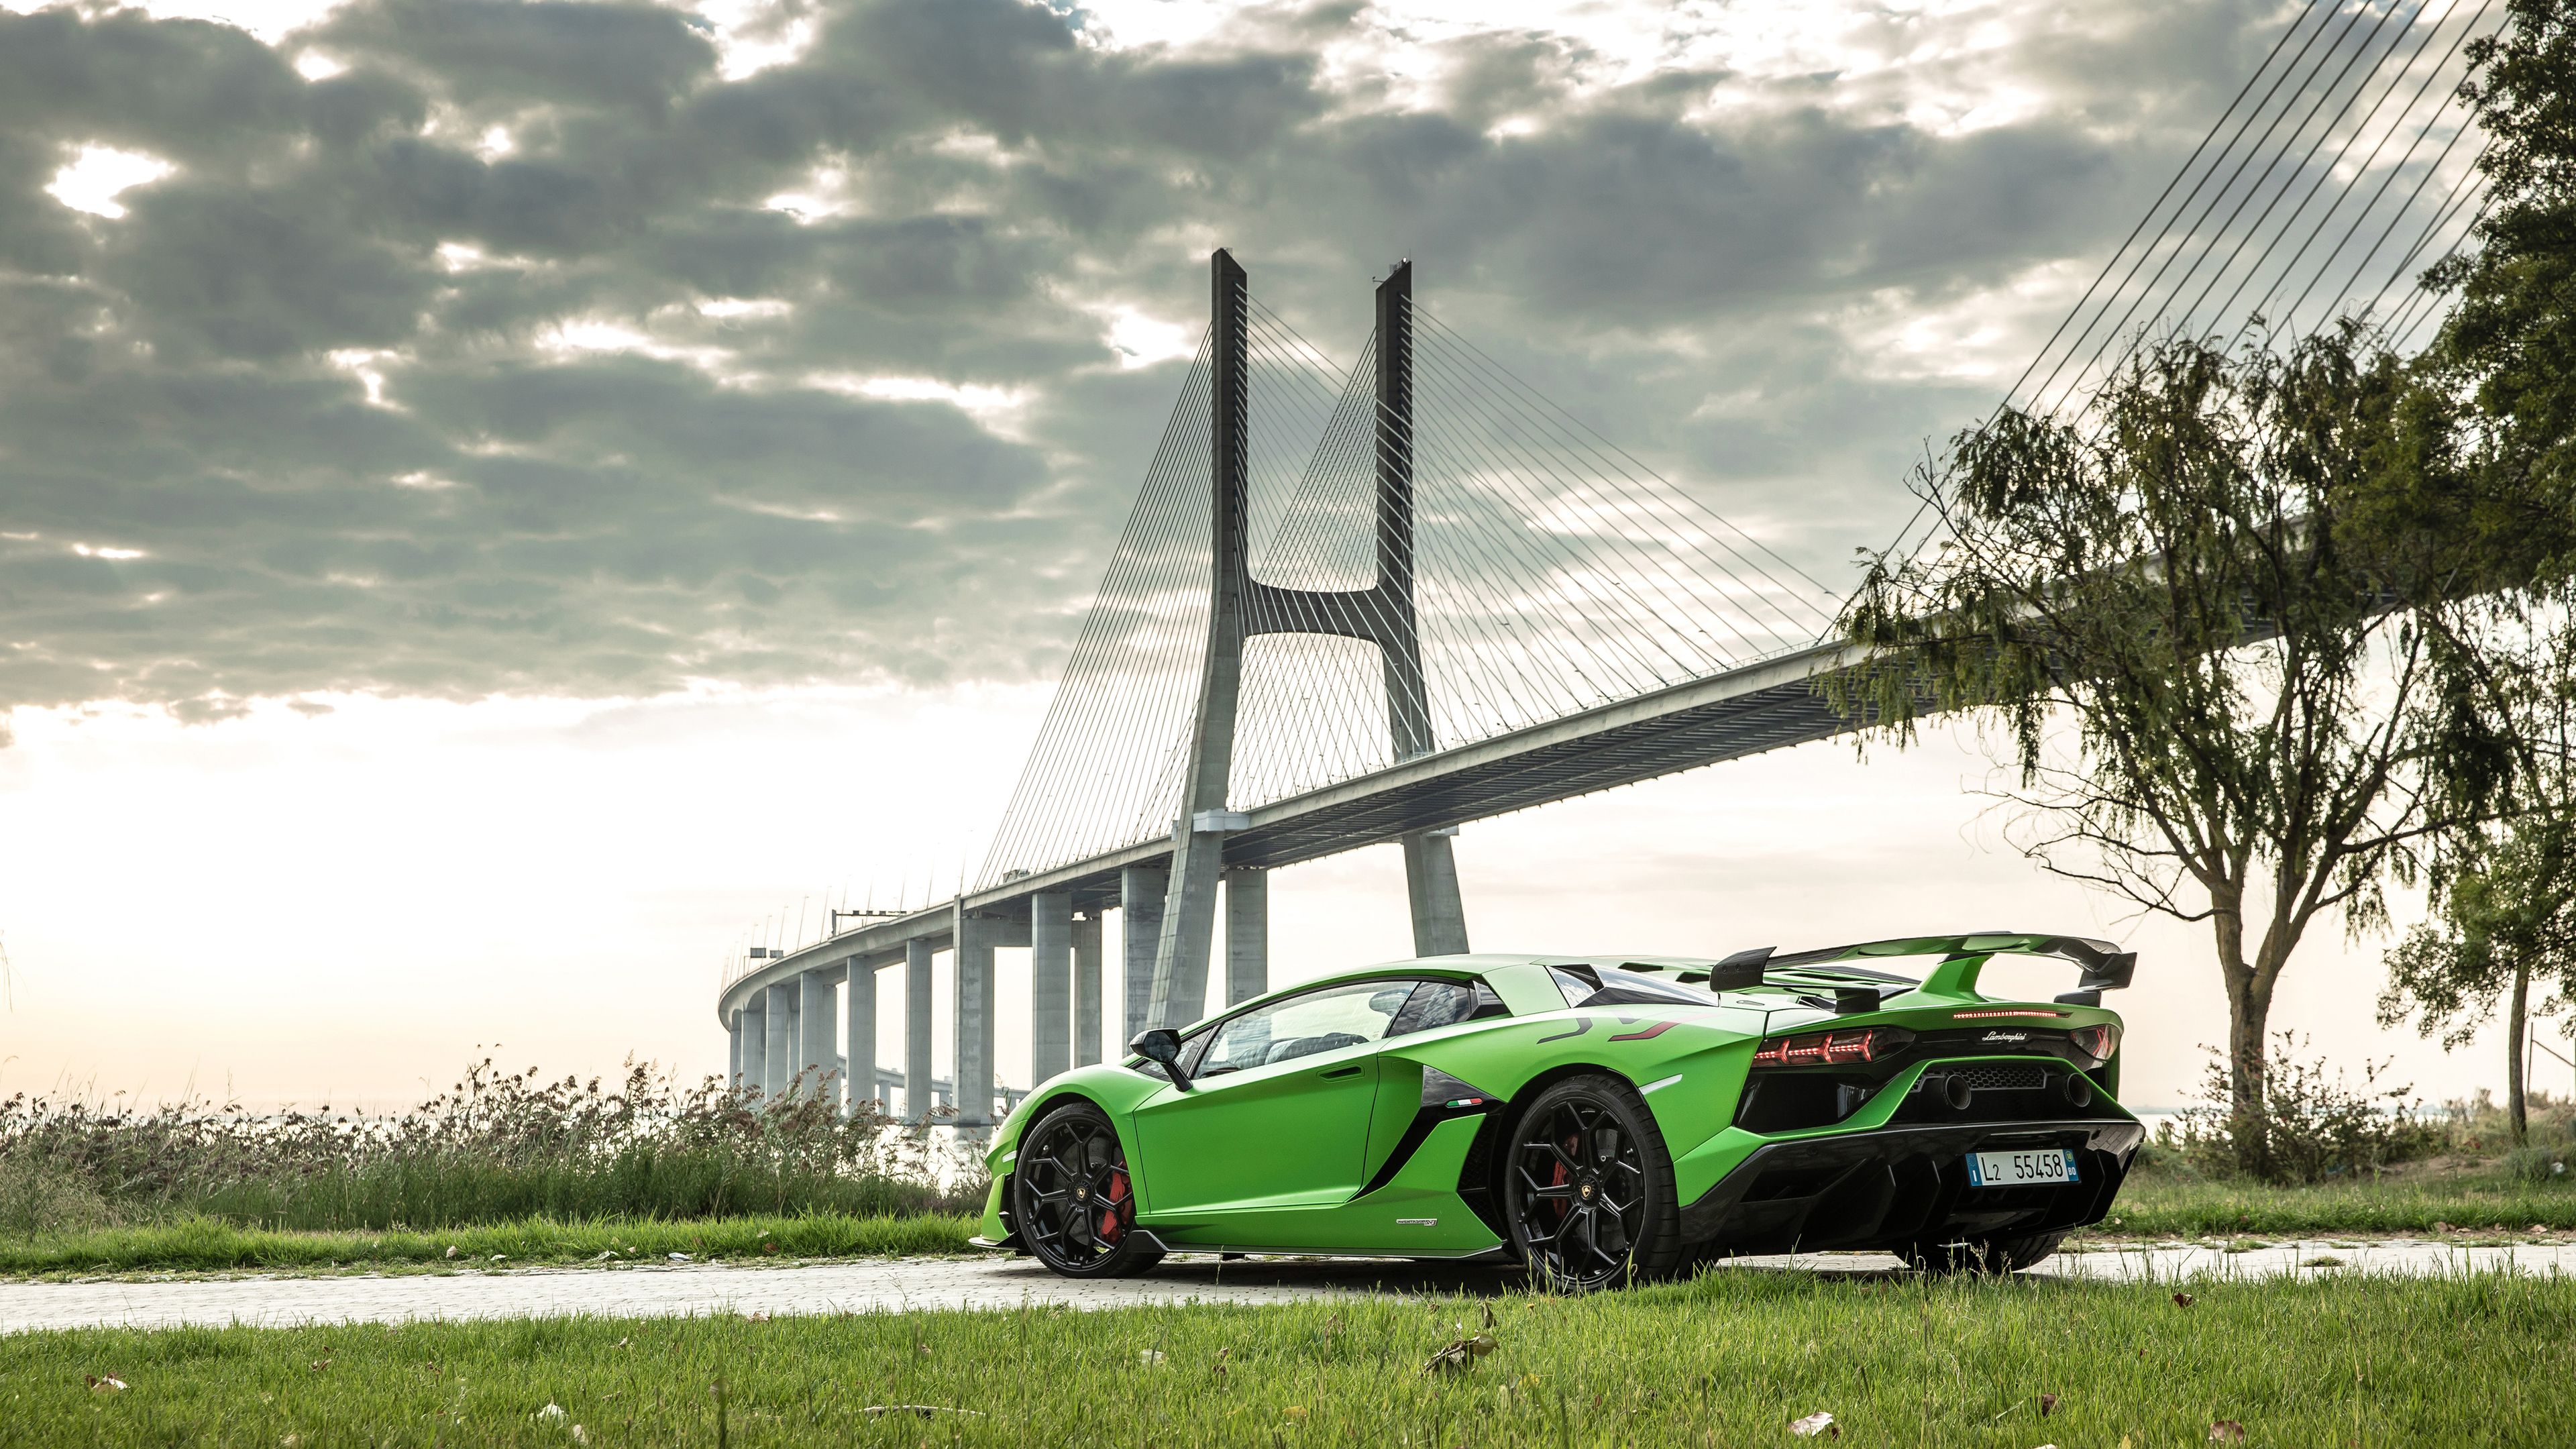 Hình nền Lamborghini sẽ mang đến cho bạn những cảm xúc khó quên của một thương hiệu siêu xe đẳng cấp. Chiêm ngưỡng bộ sưu tập hình ảnh về Lamborghini và cảm nhận sự hoàn hảo của các dòng xe này.